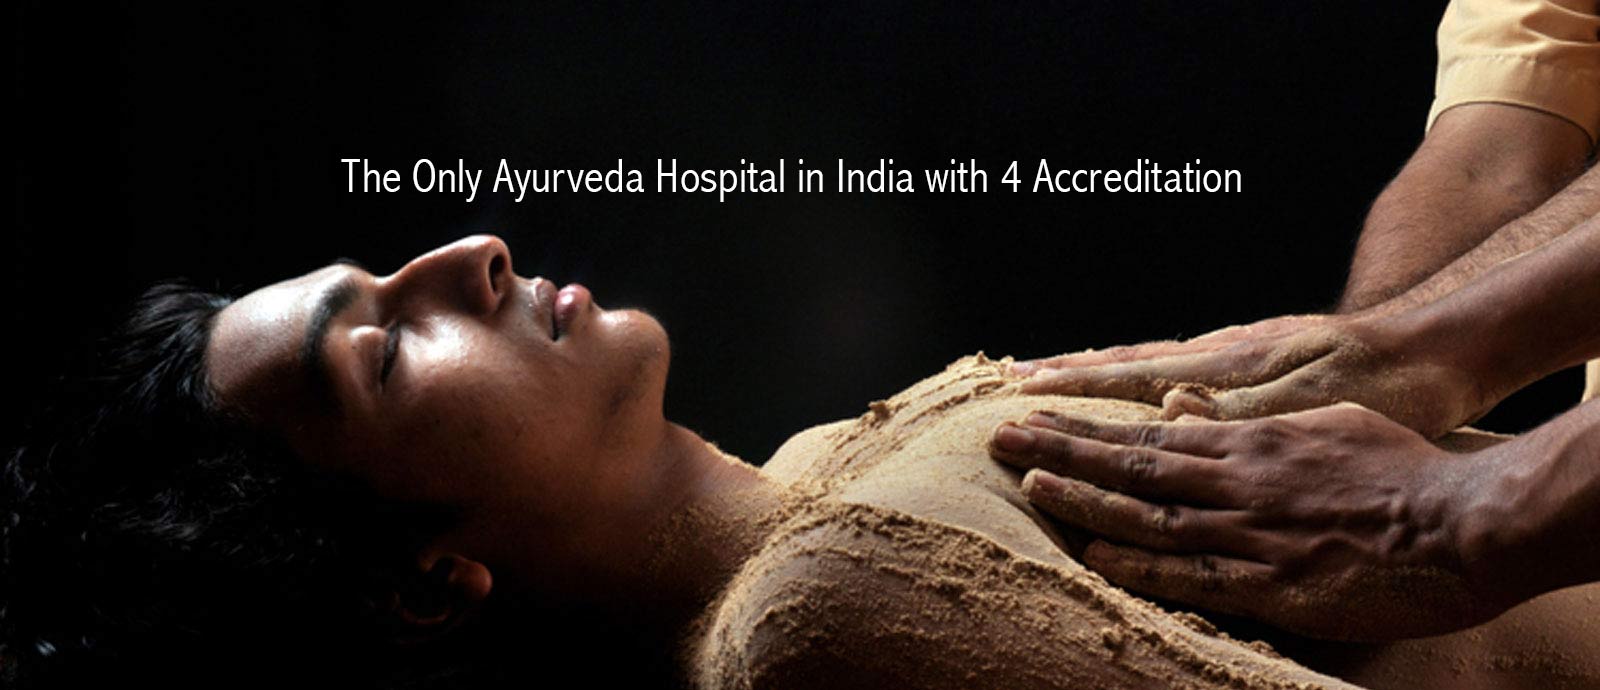 Punarnava Ayurveda Hospital at Kochi